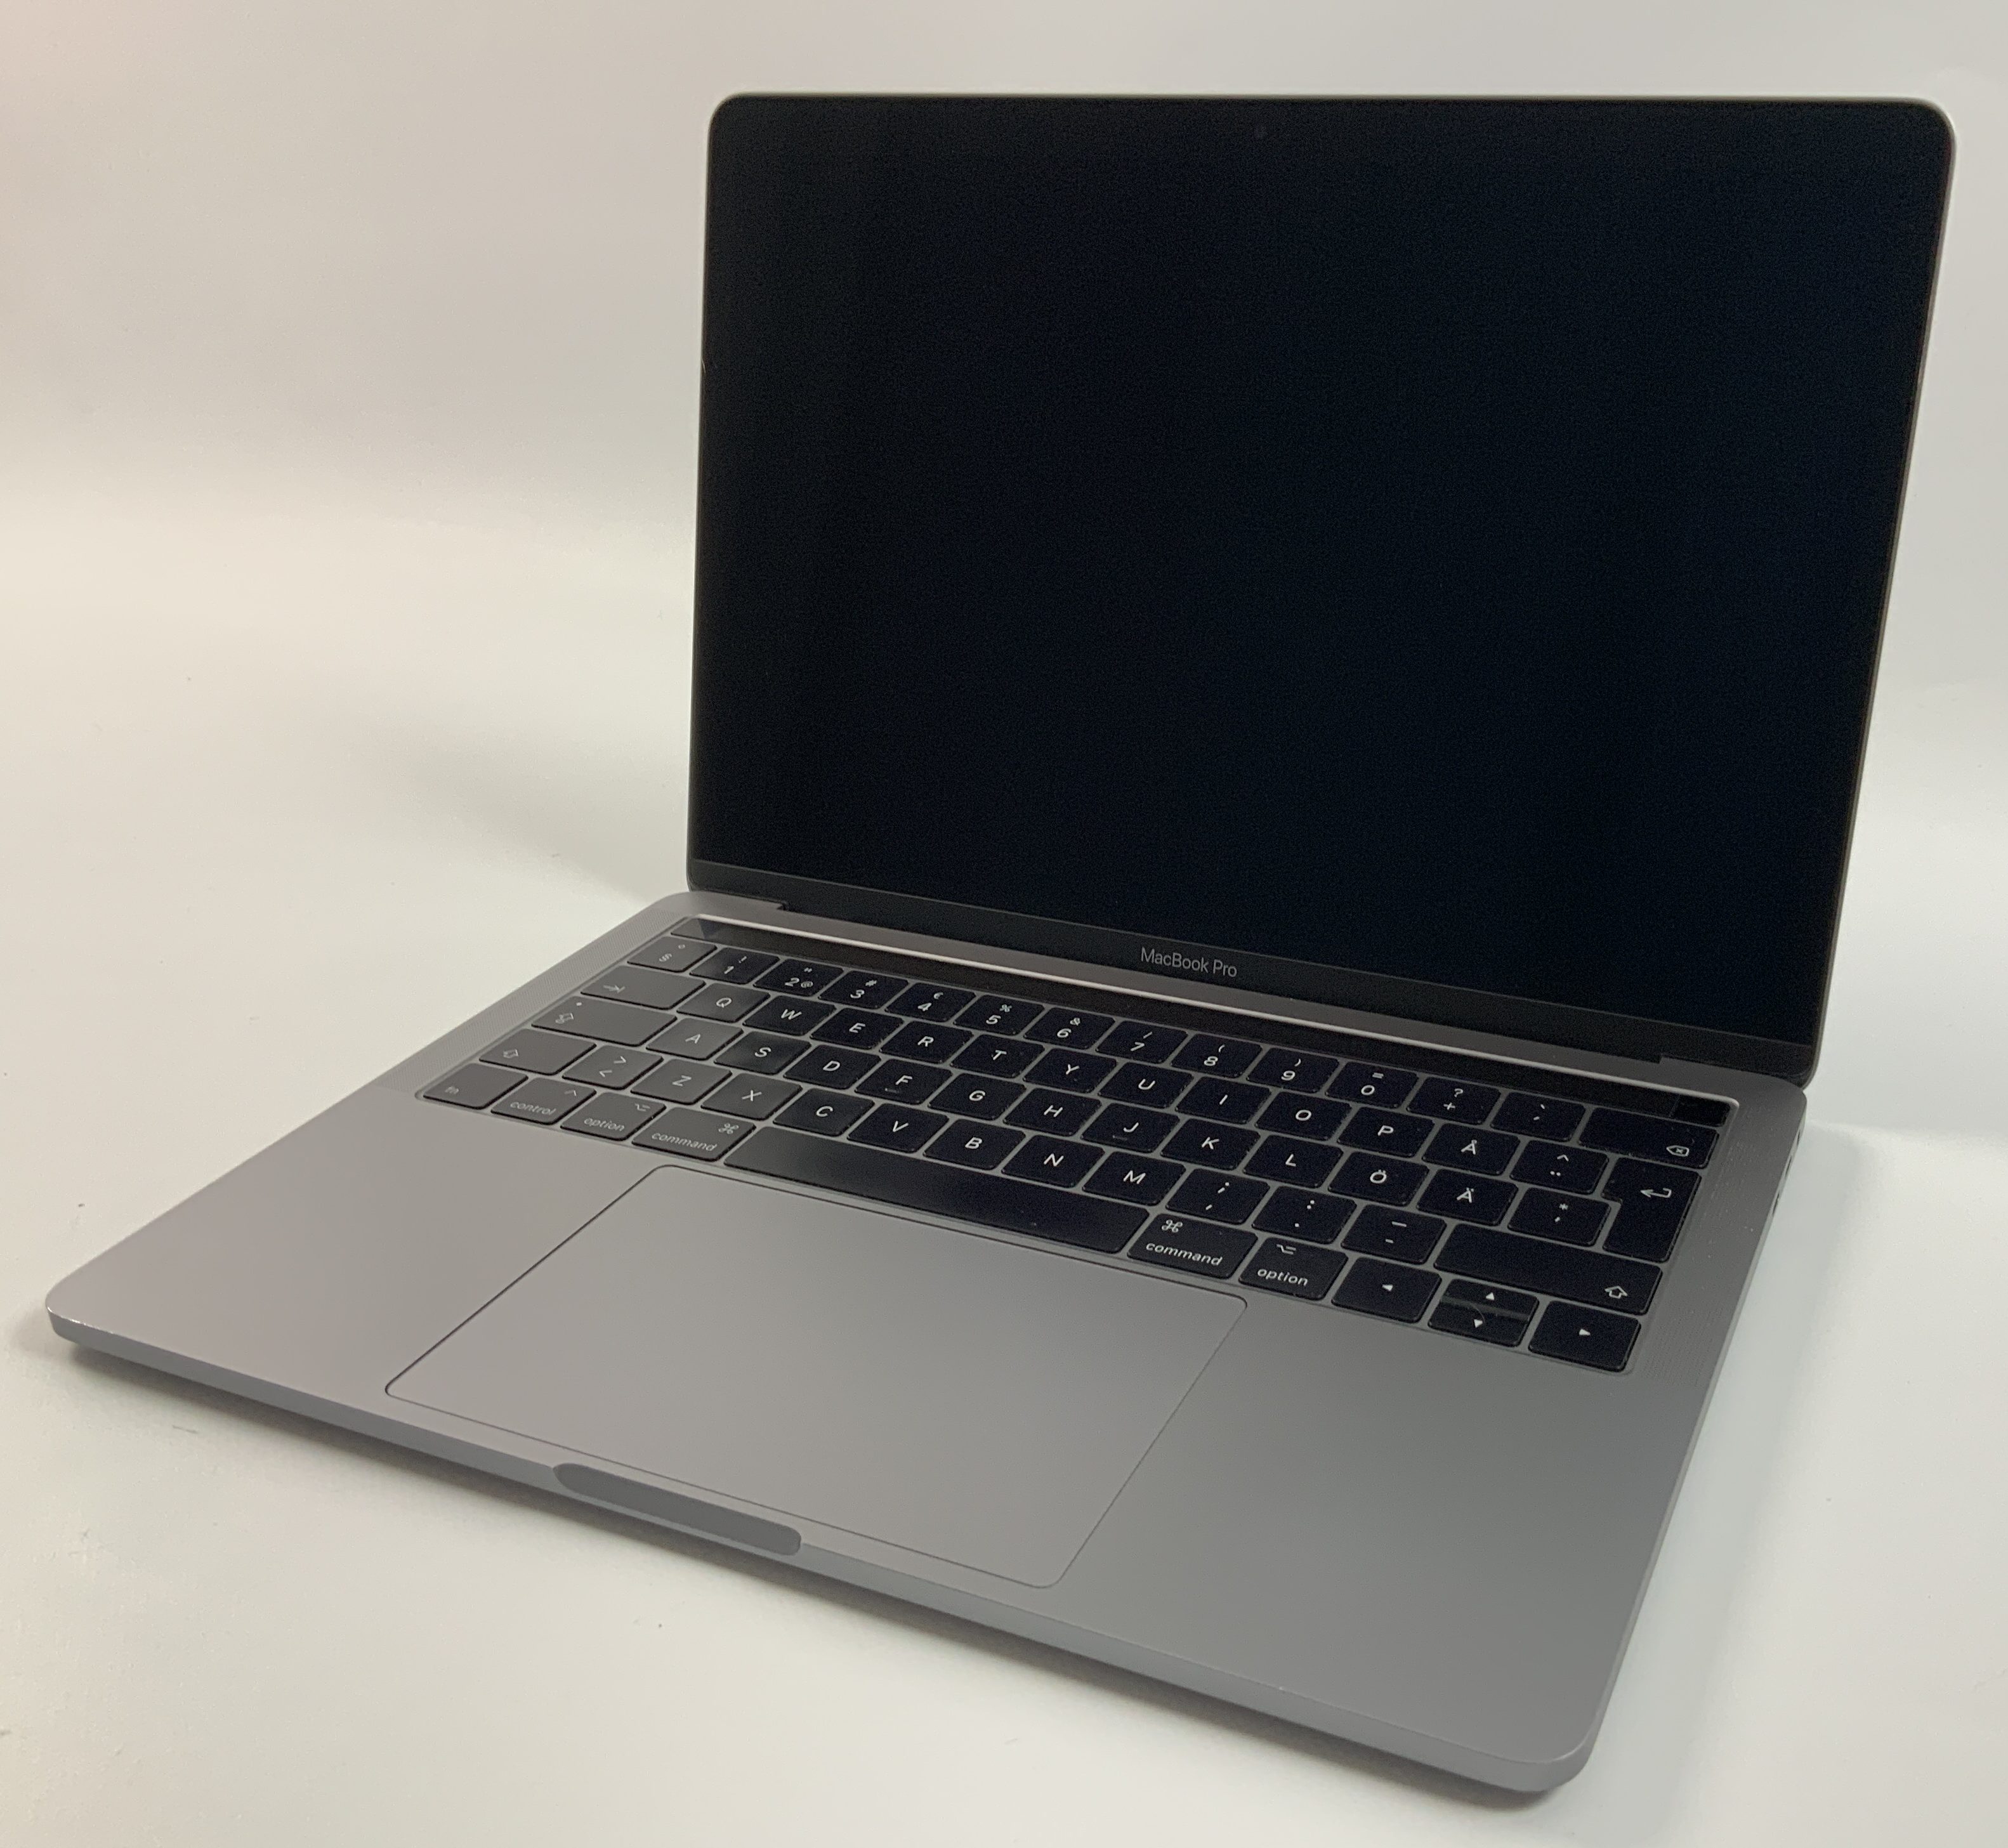 MacBook Pro 13" 4TBT Mid 2017 (Intel Core i5 3.1 GHz 8 GB RAM 256 GB SSD), Space Gray, Intel Core i5 3.1 GHz, 8 GB RAM, 256 GB SSD, Kuva 1